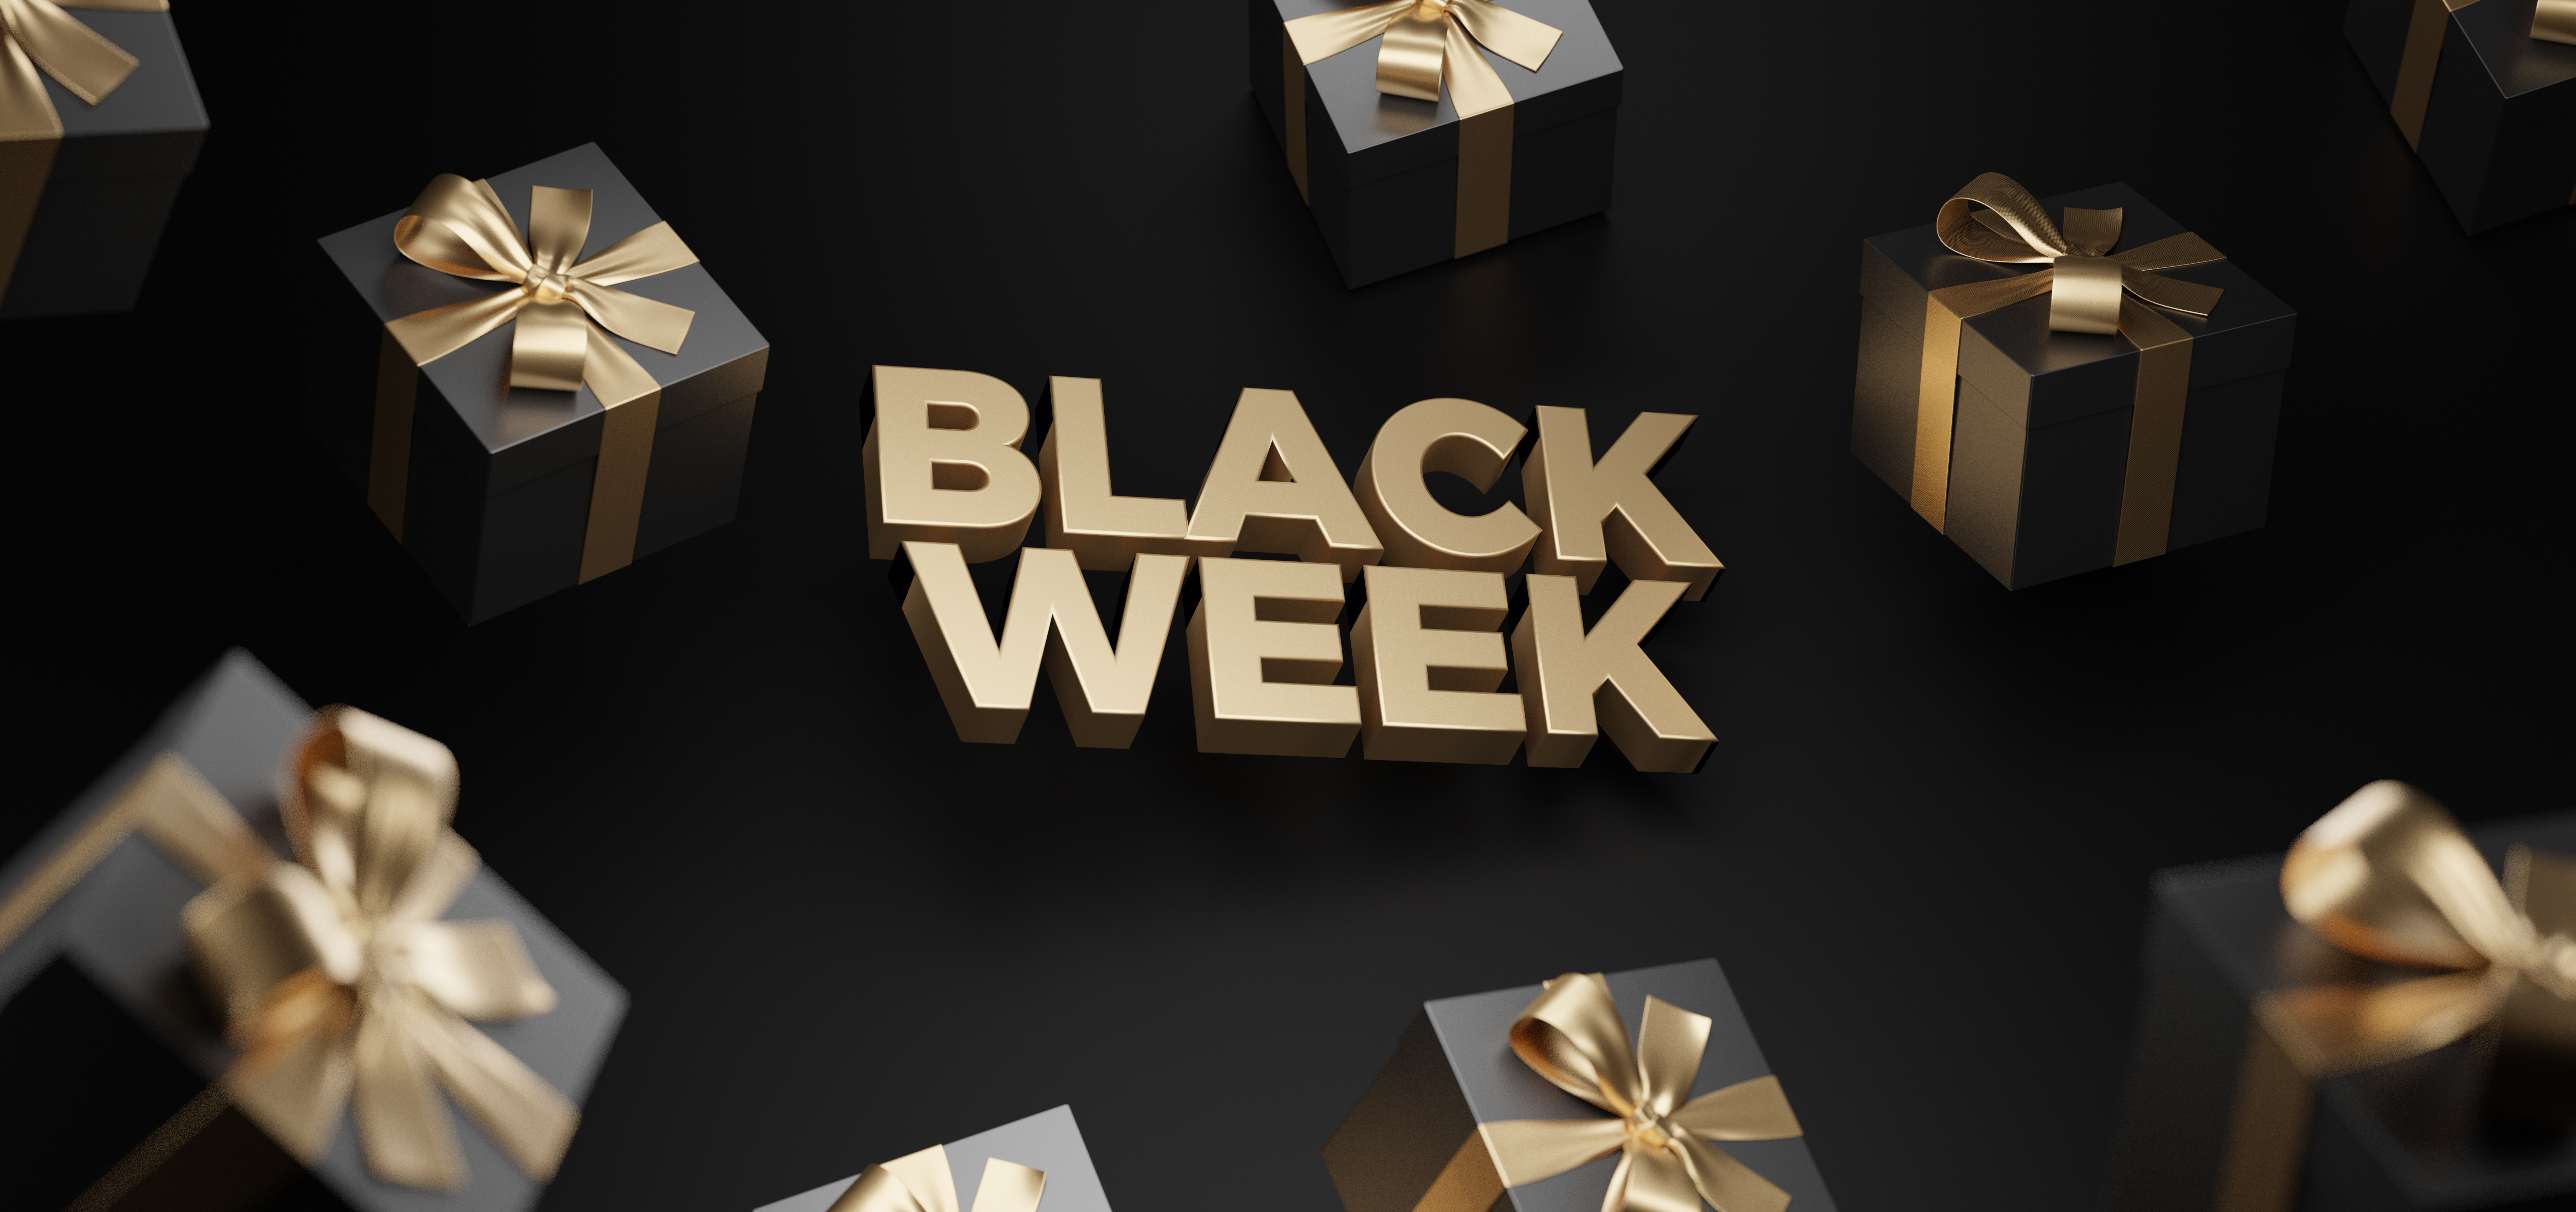 N'attendez plus, et profitez dès maintenant de nombreuses remises à l'occasion de la Black Week © boschman, Adobe Stock